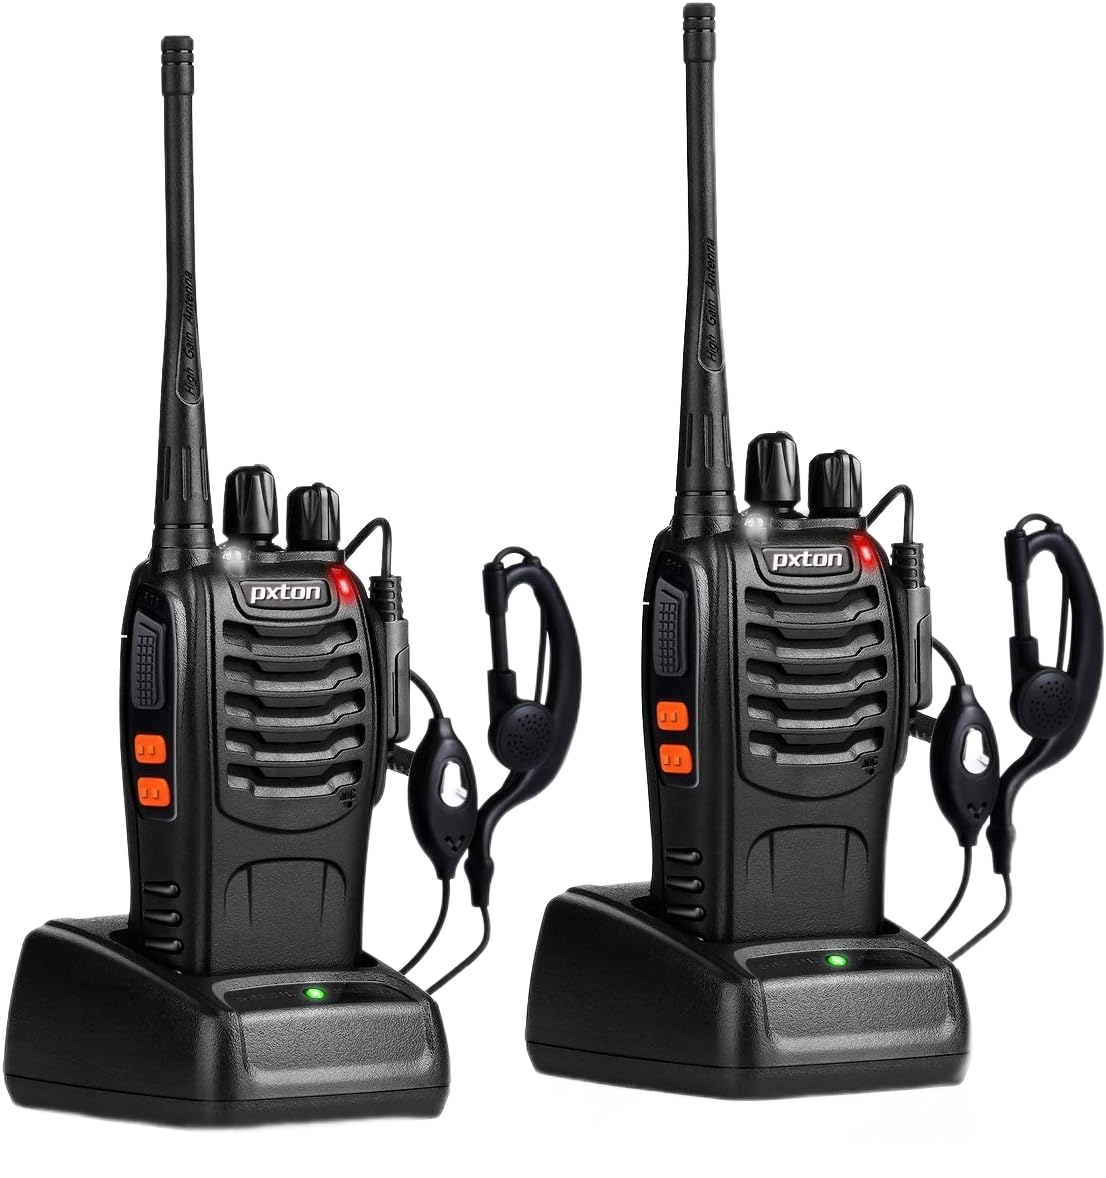 pxton walkie talkies